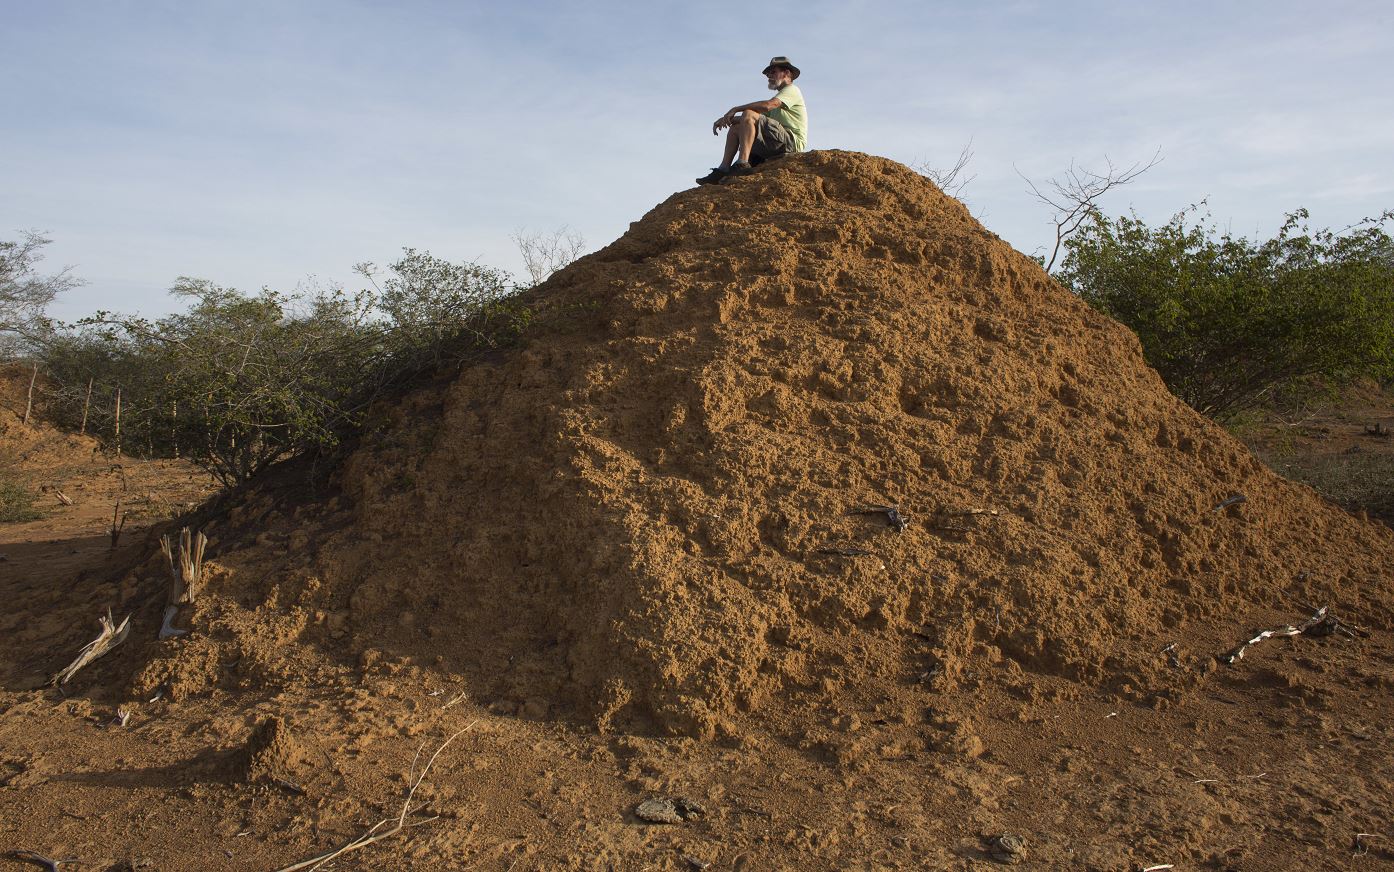 Gigantescos montículos de tierra creados por termitas